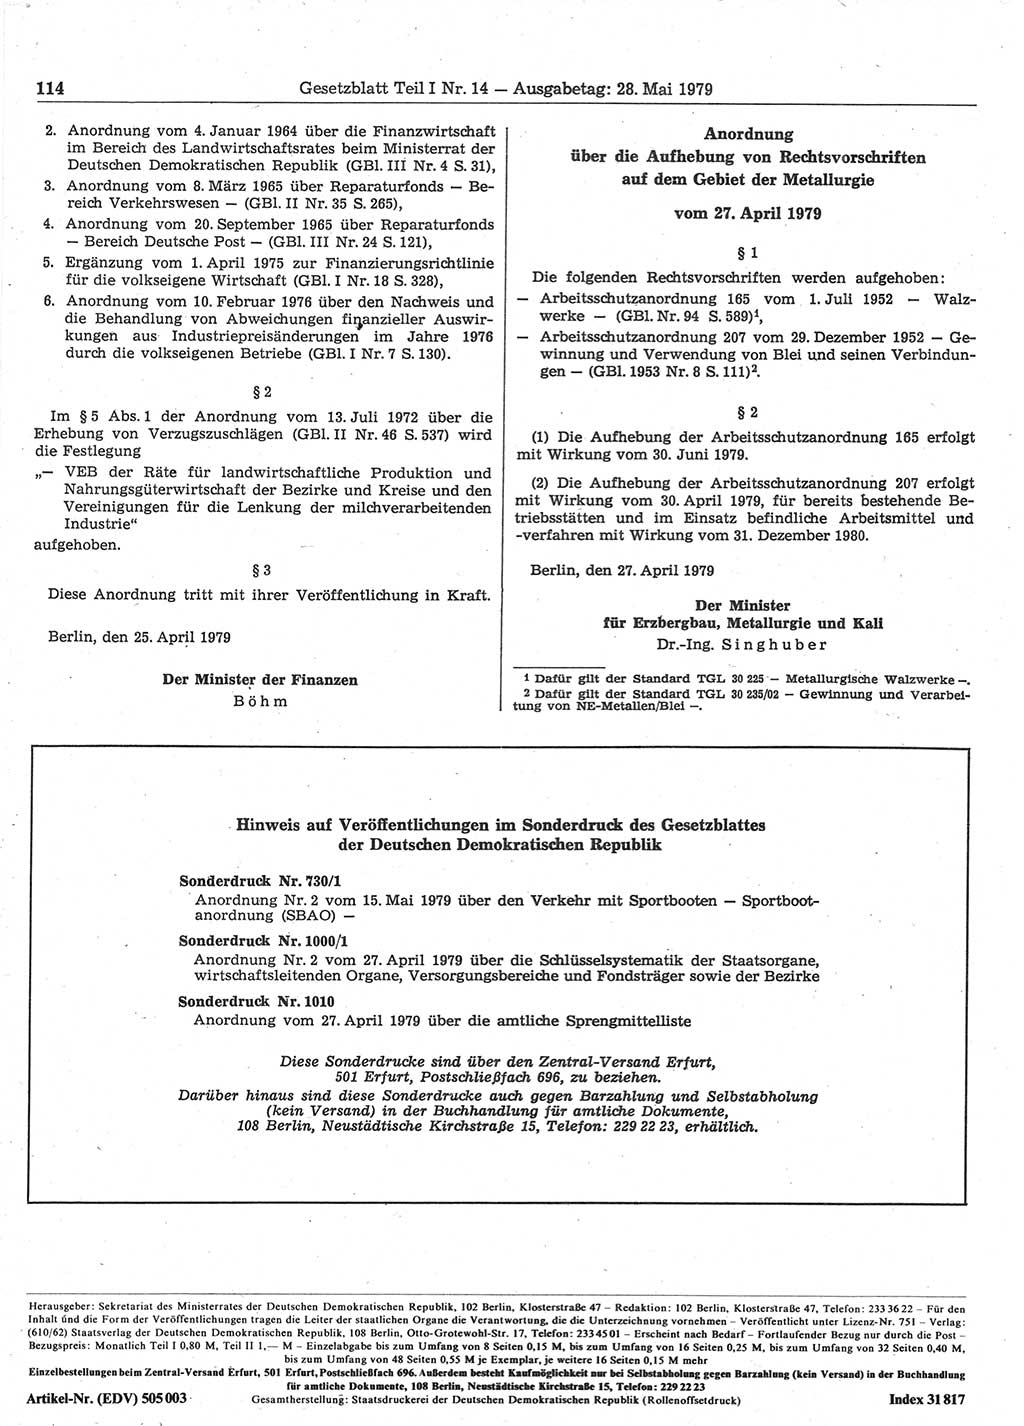 Gesetzblatt (GBl.) der Deutschen Demokratischen Republik (DDR) Teil Ⅰ 1979, Seite 114 (GBl. DDR Ⅰ 1979, S. 114)